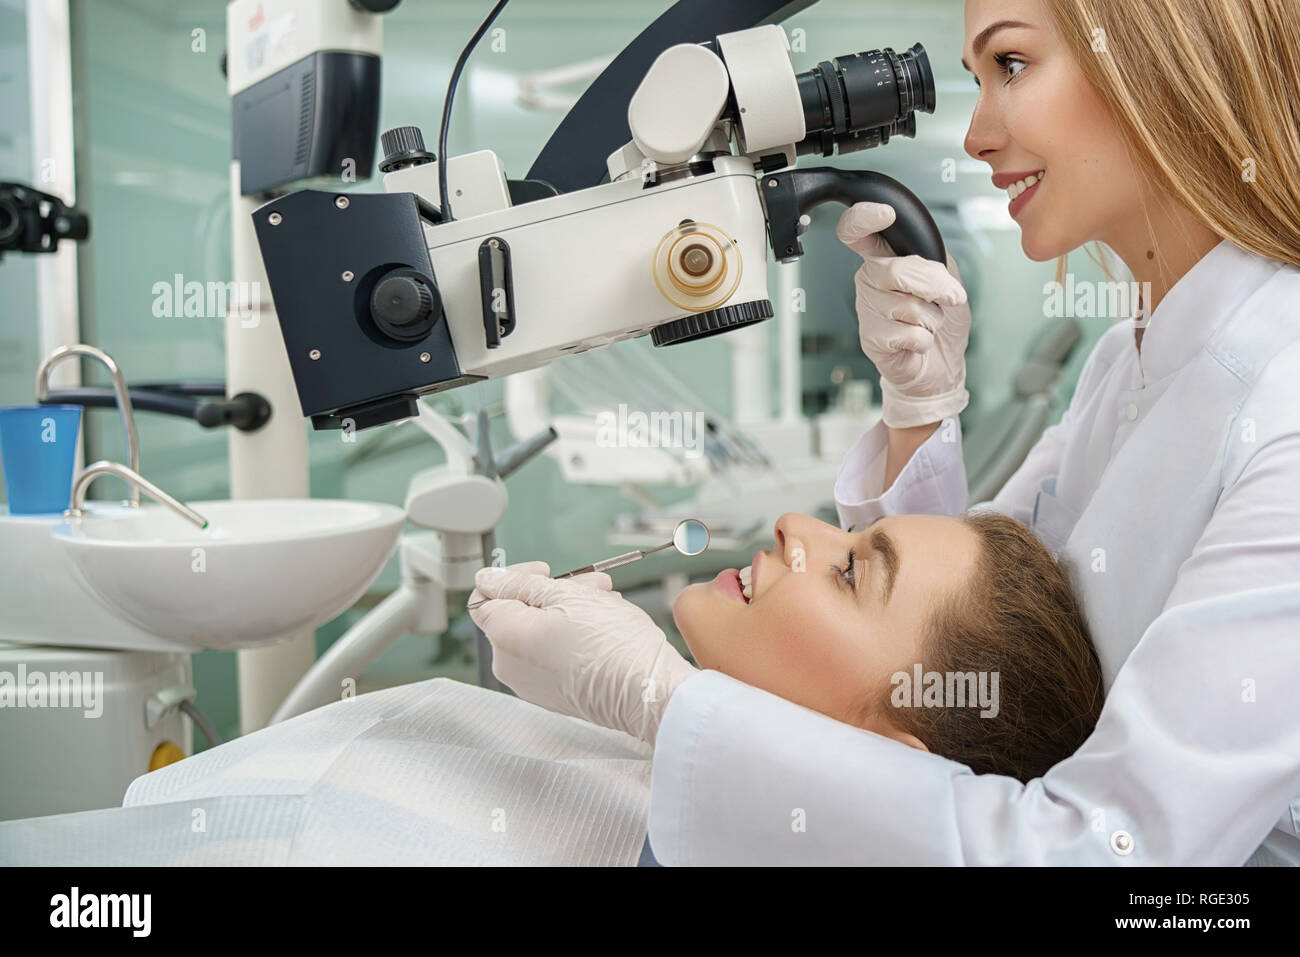 Seitenansicht der jungen Frau liegend auf zahnmedizinischen Stuhl während des Verfahrens in der Klinik. Professionelle weiblichen Zahnarzt Kontrolle der Zähne mit modernen Mikroskop. Konzept der Zahntechnik und Zahnmedizin. Stockfoto